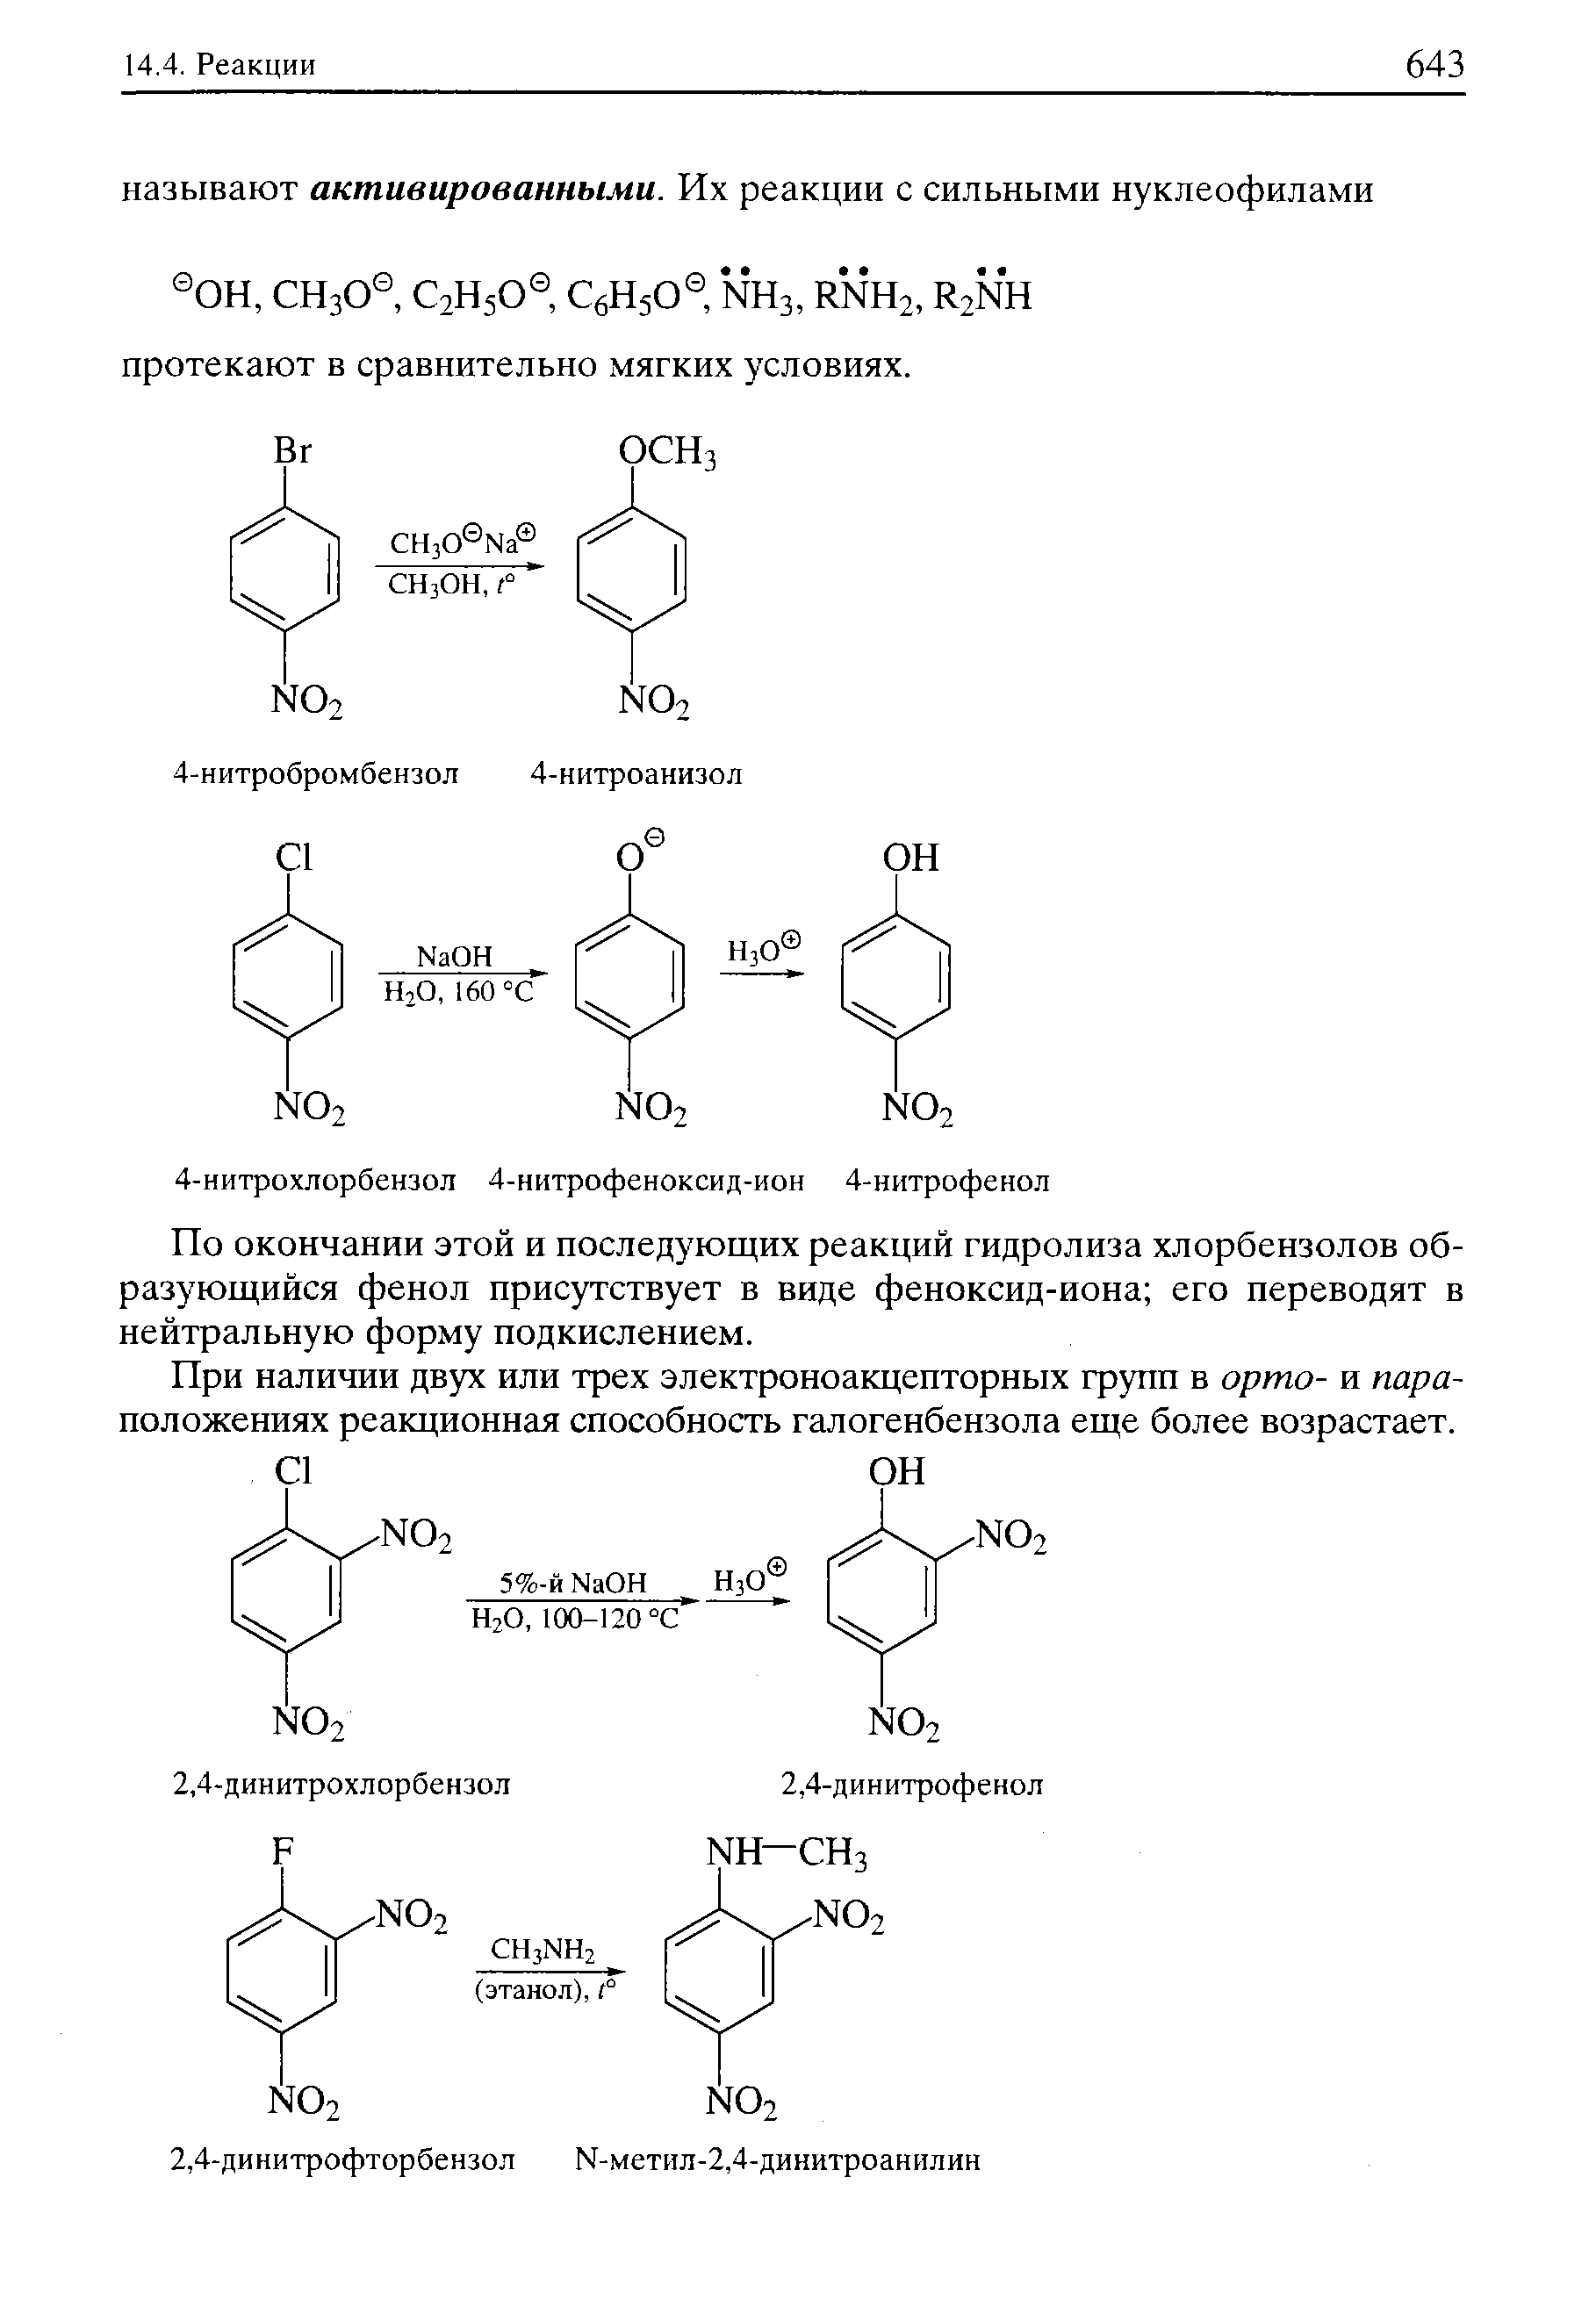 По окончании этой и последующих реакций гидролиза хлорбензолов образующийся фенол присутствует в виде феноксид-иона его переводят в нейтральную форму подкислепием.